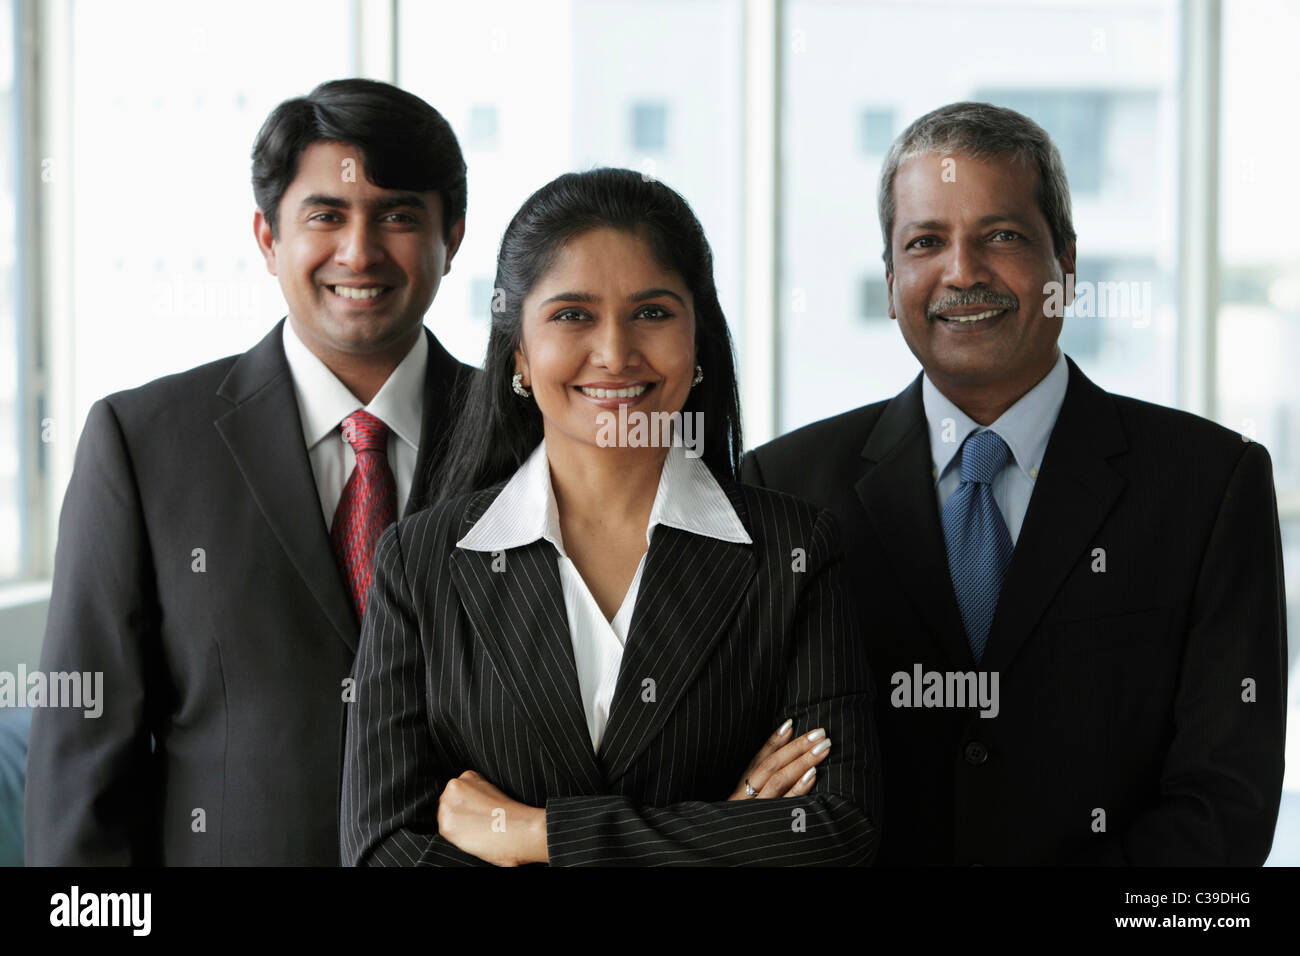 Drei Indianer gekleidet in Business-Anzügen und lächelnd Stockfoto